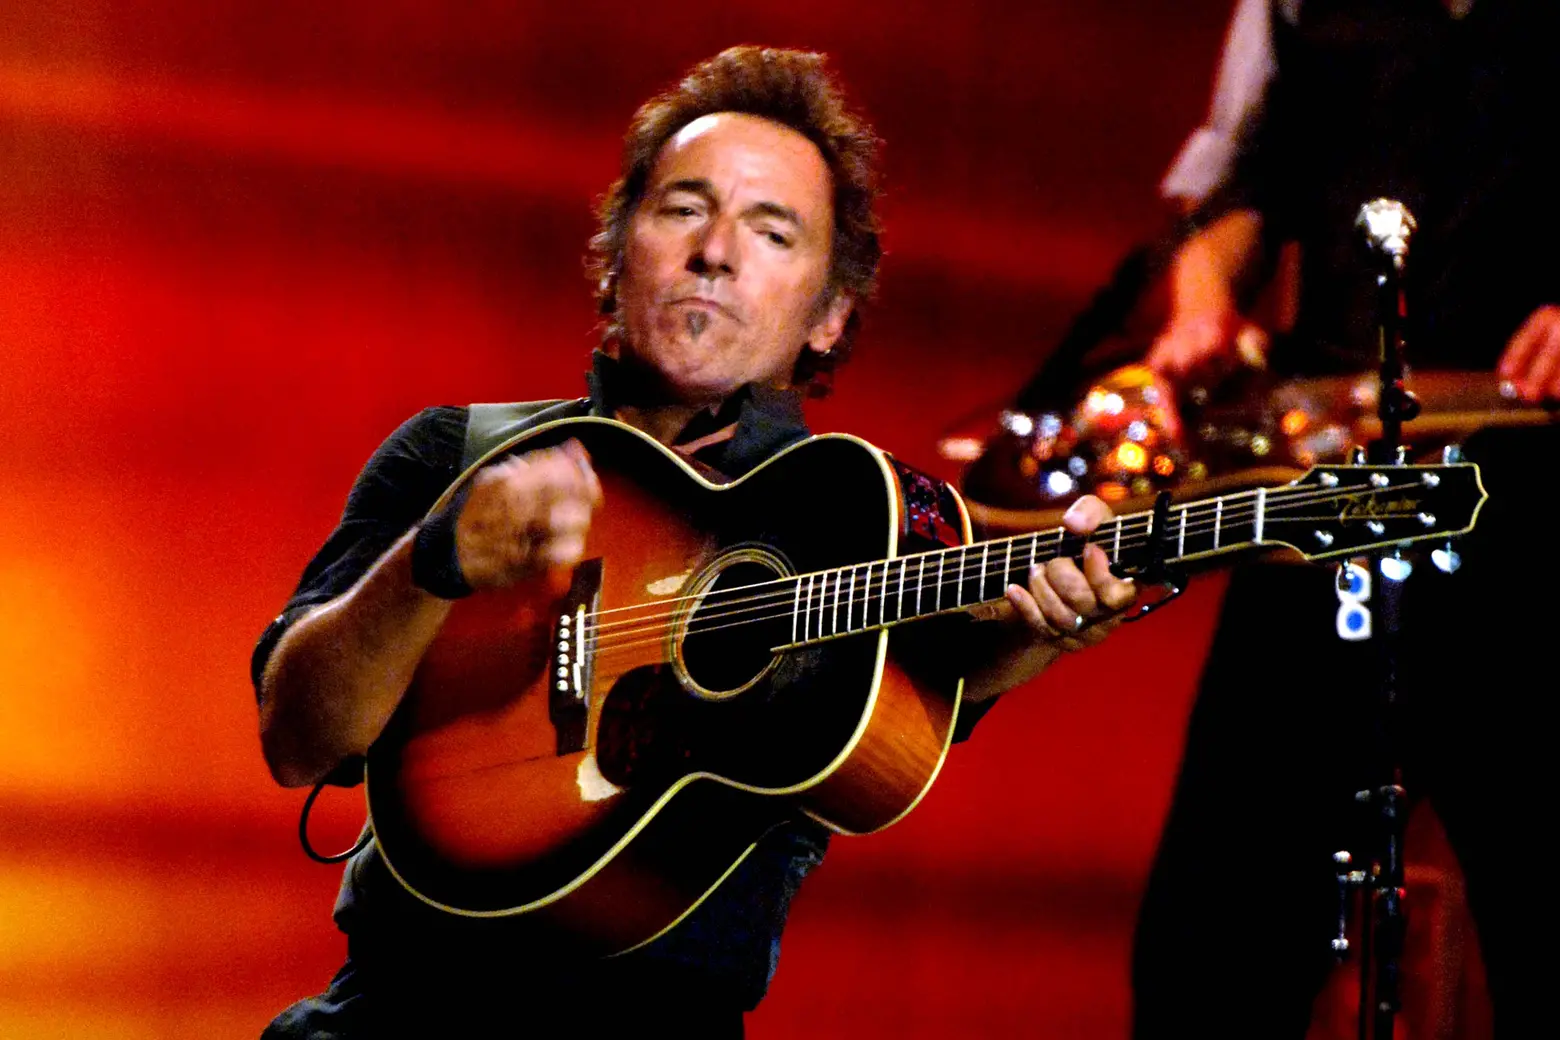 Il concerto di Springsteen a Ferrara si sarà